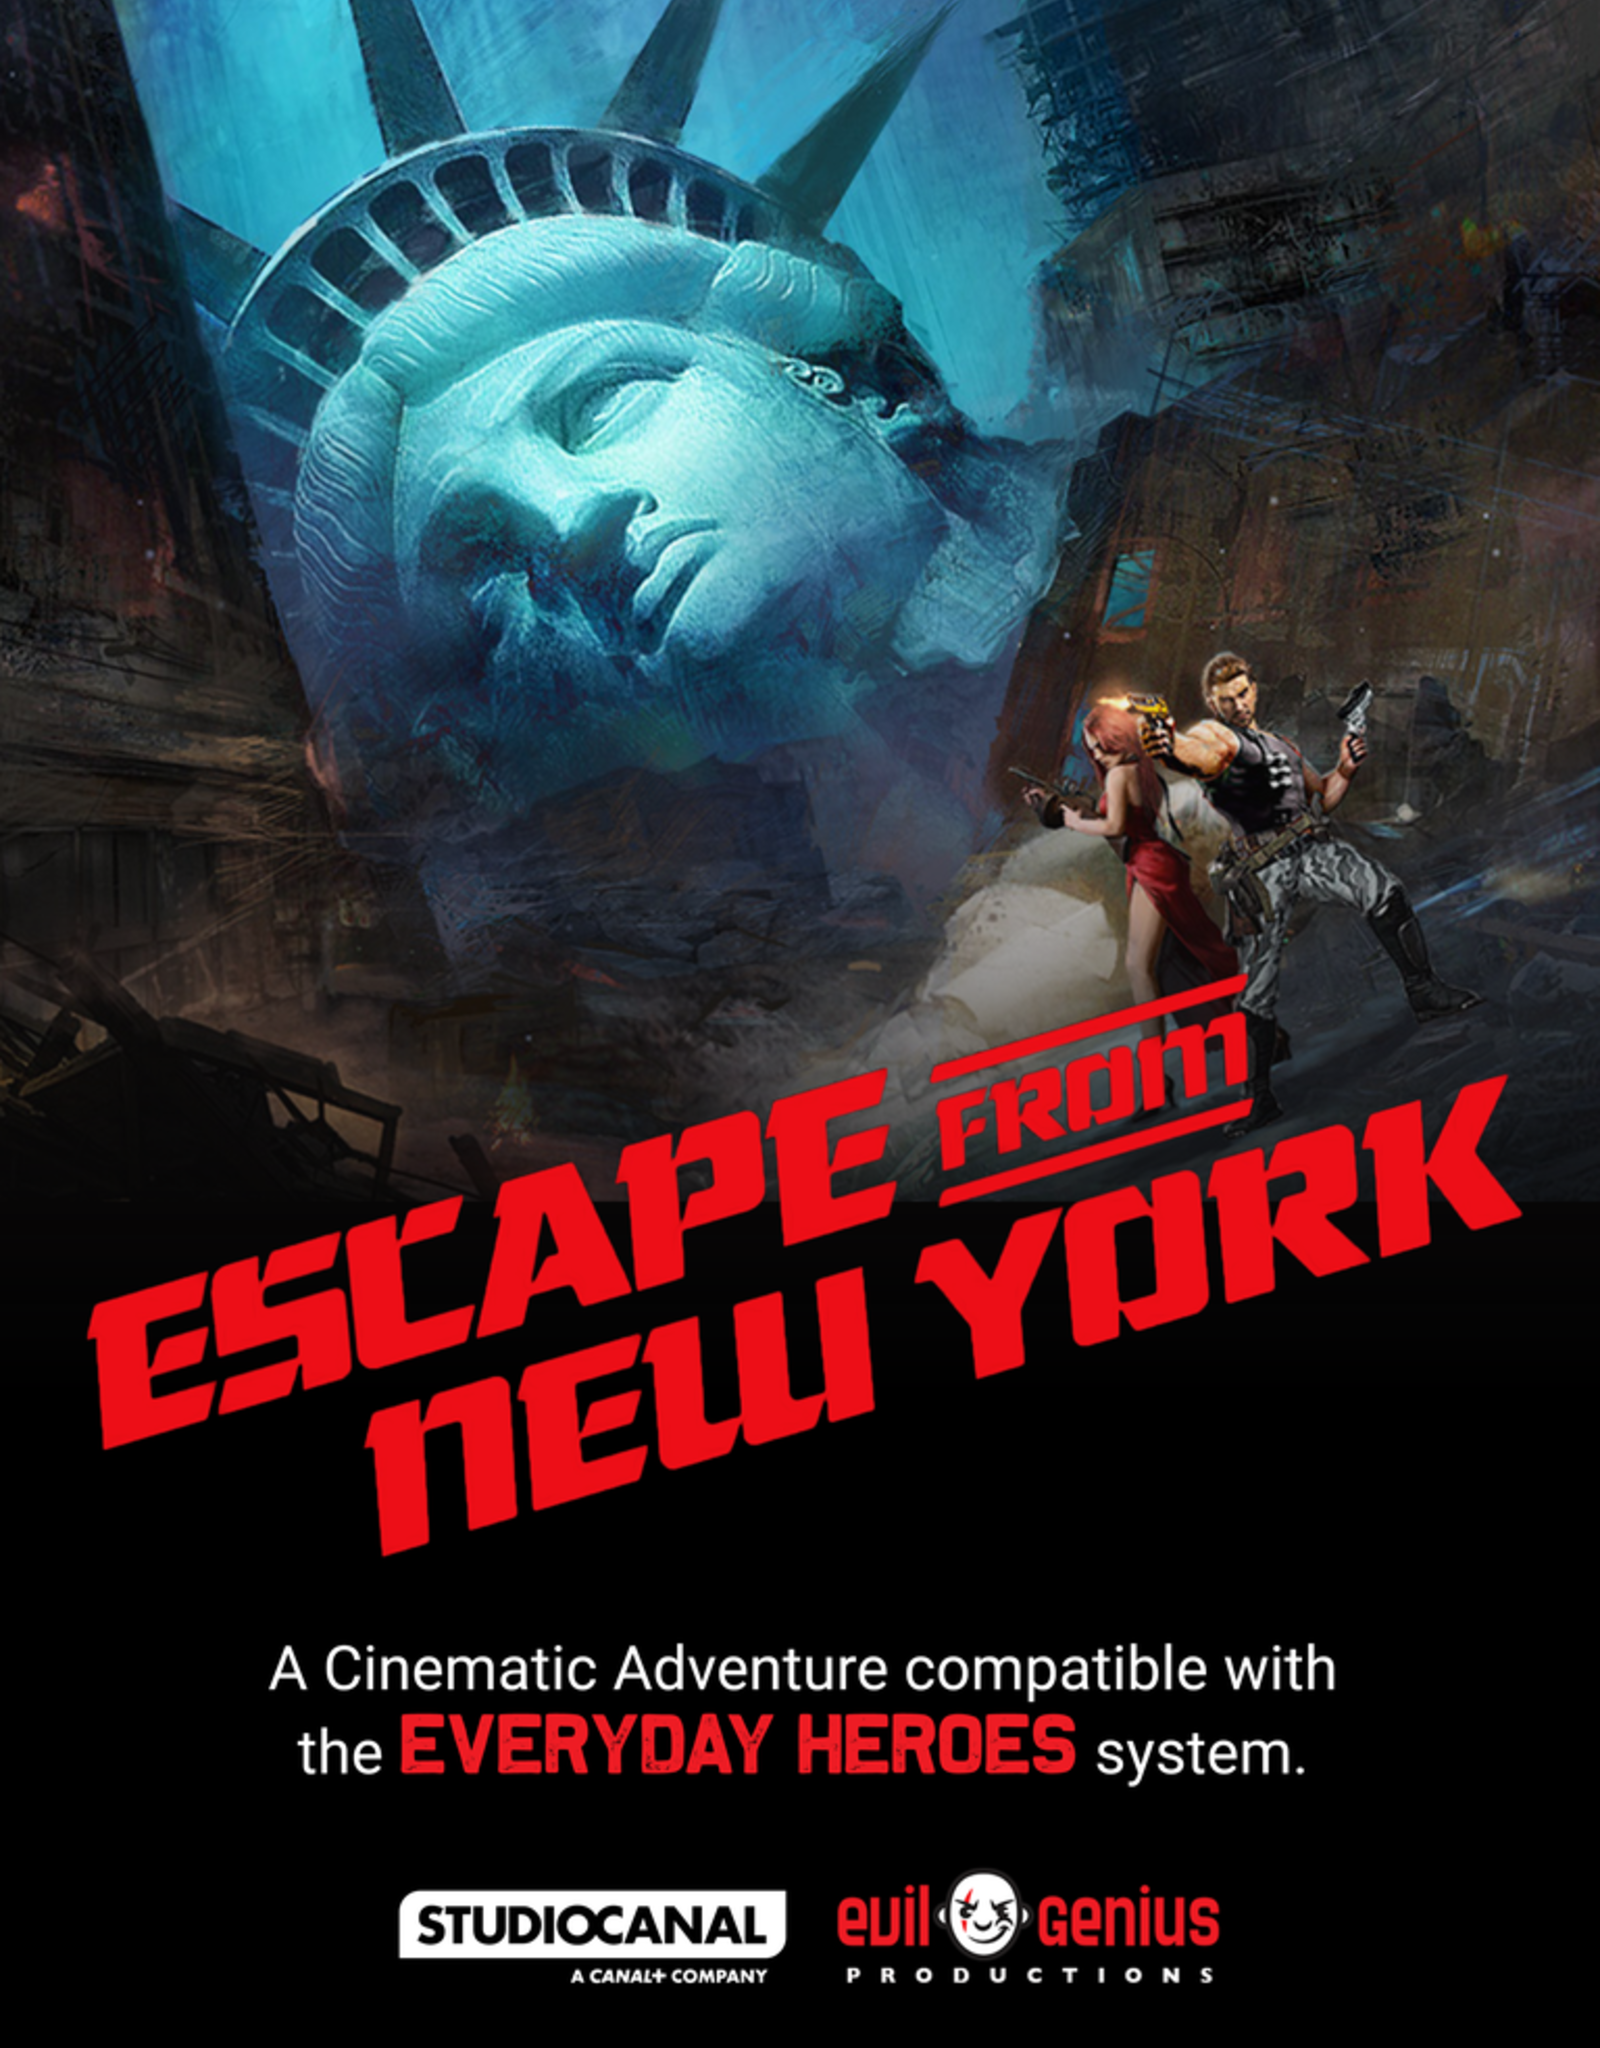 Evil Genius ESCAPE FROM NEW YORK CINEMATIC ADVENTURE